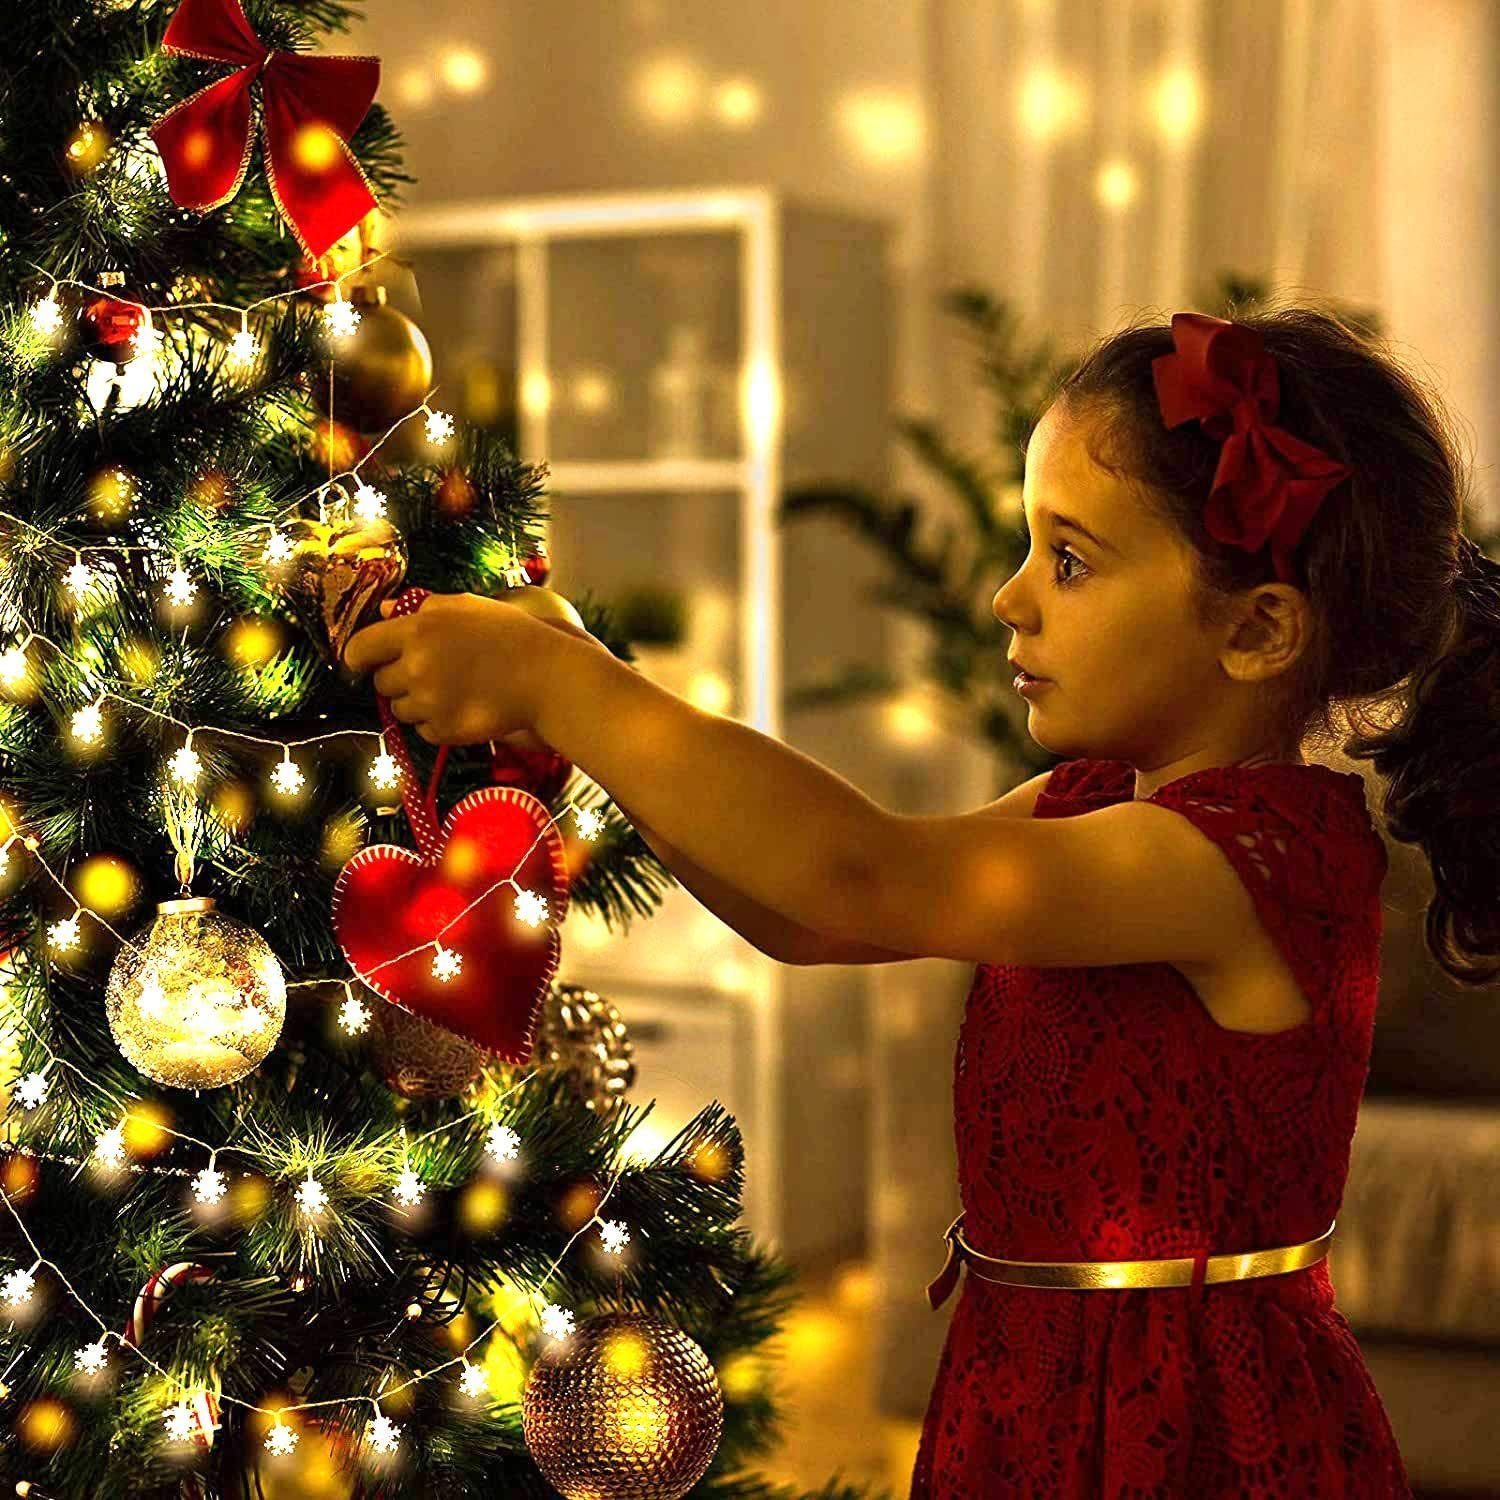 Schneeflocken Weihnachten, E0204, LED Beleuchtung Winter Weihnachten Herz Lichterkette, Herz Alster Alster LED-Lichterkette